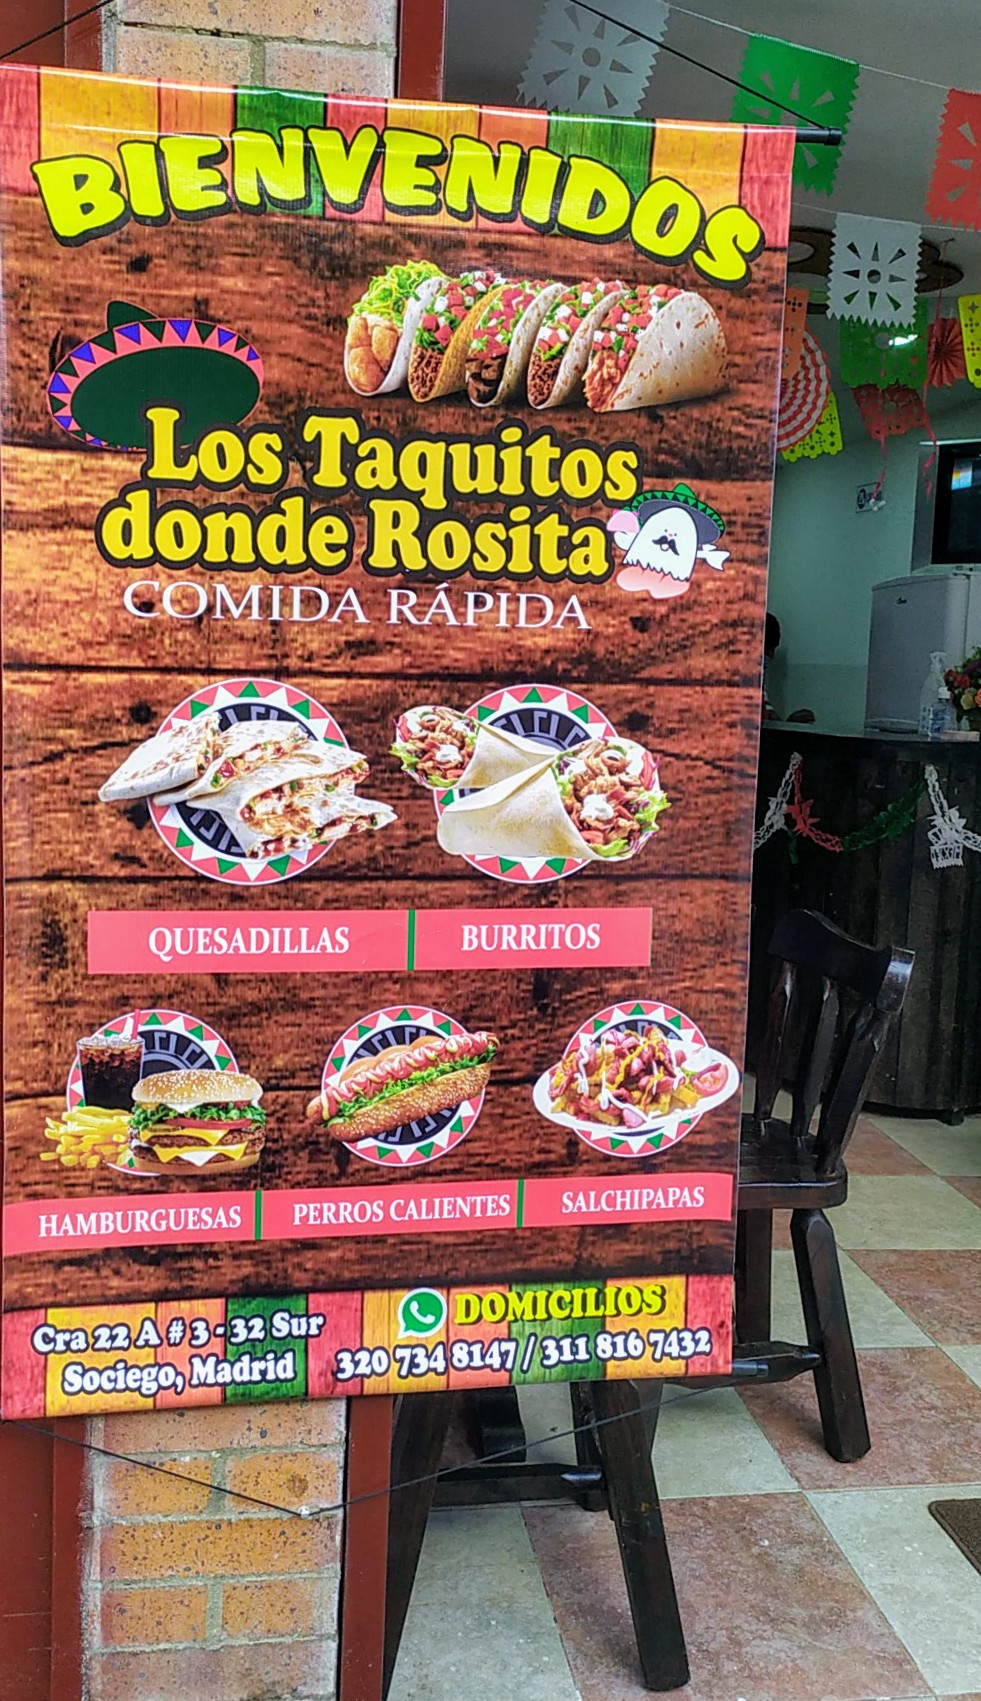 Los Taquitos Dónde Rosita (comida rápida)